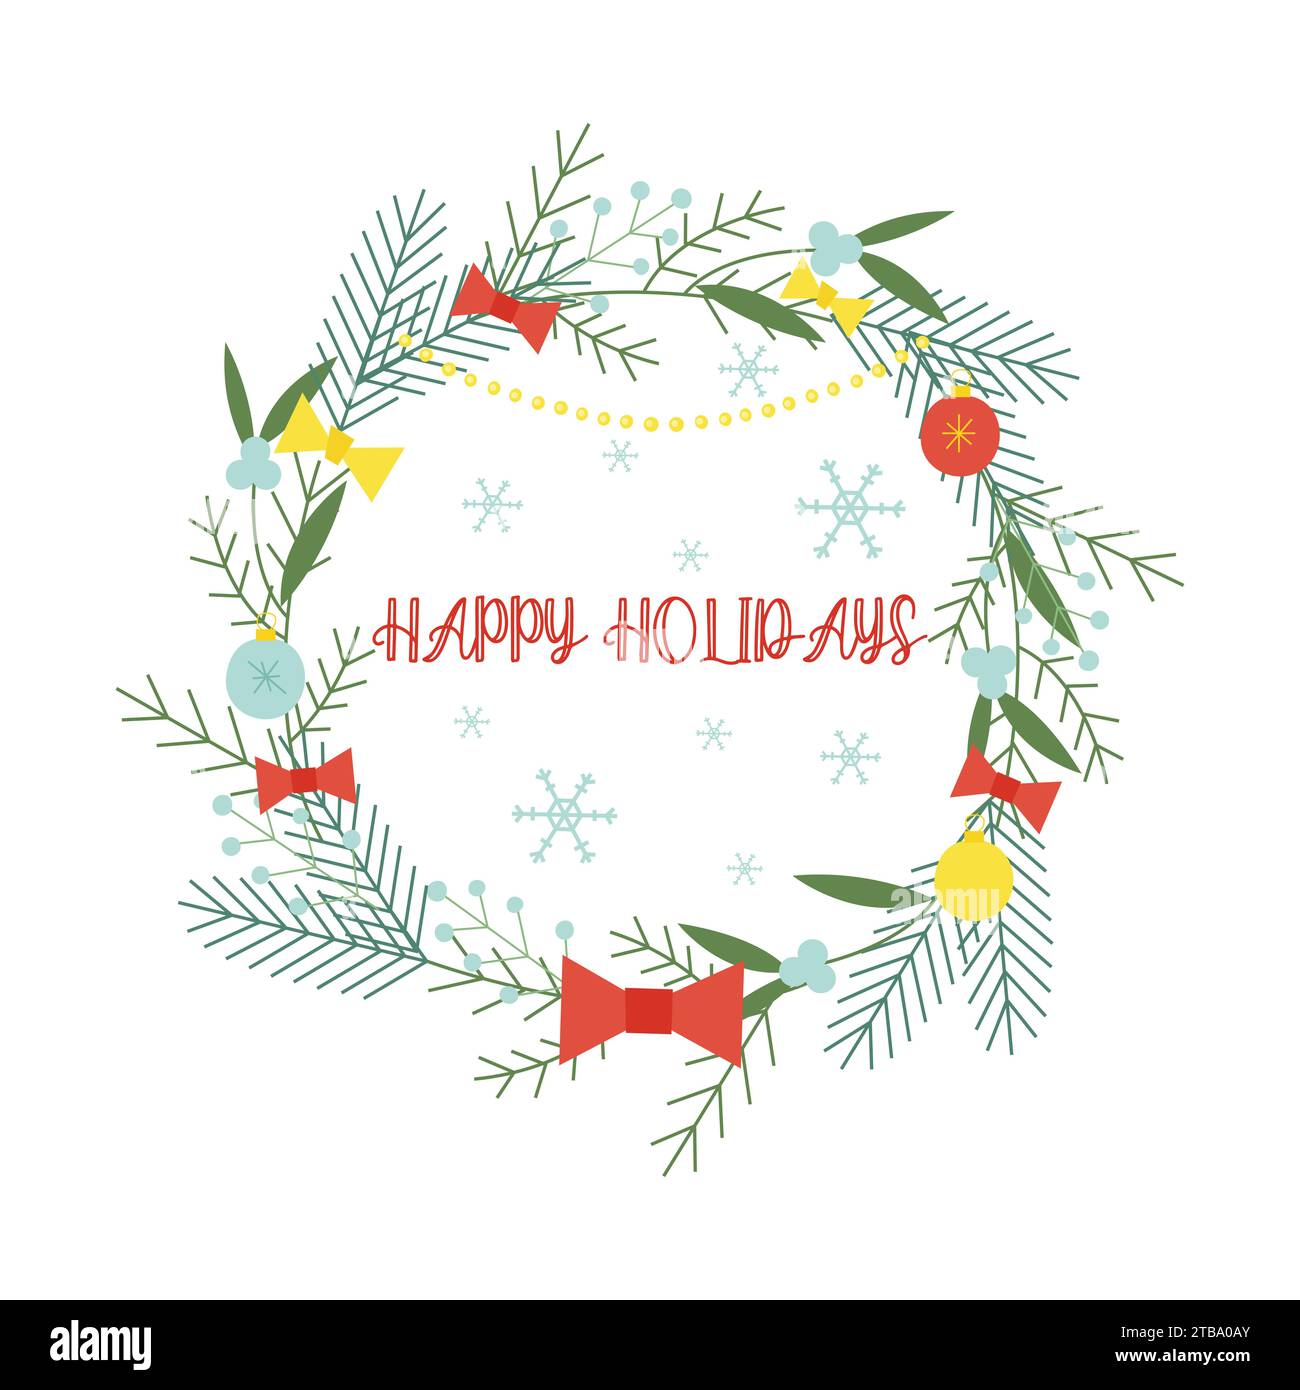 Weihnachtskranz mit Tannenzweigen, weihnachtskugeln und Omela. Flache Vektorillustration für Druck-, Design- und Grußkarten Stock Vektor